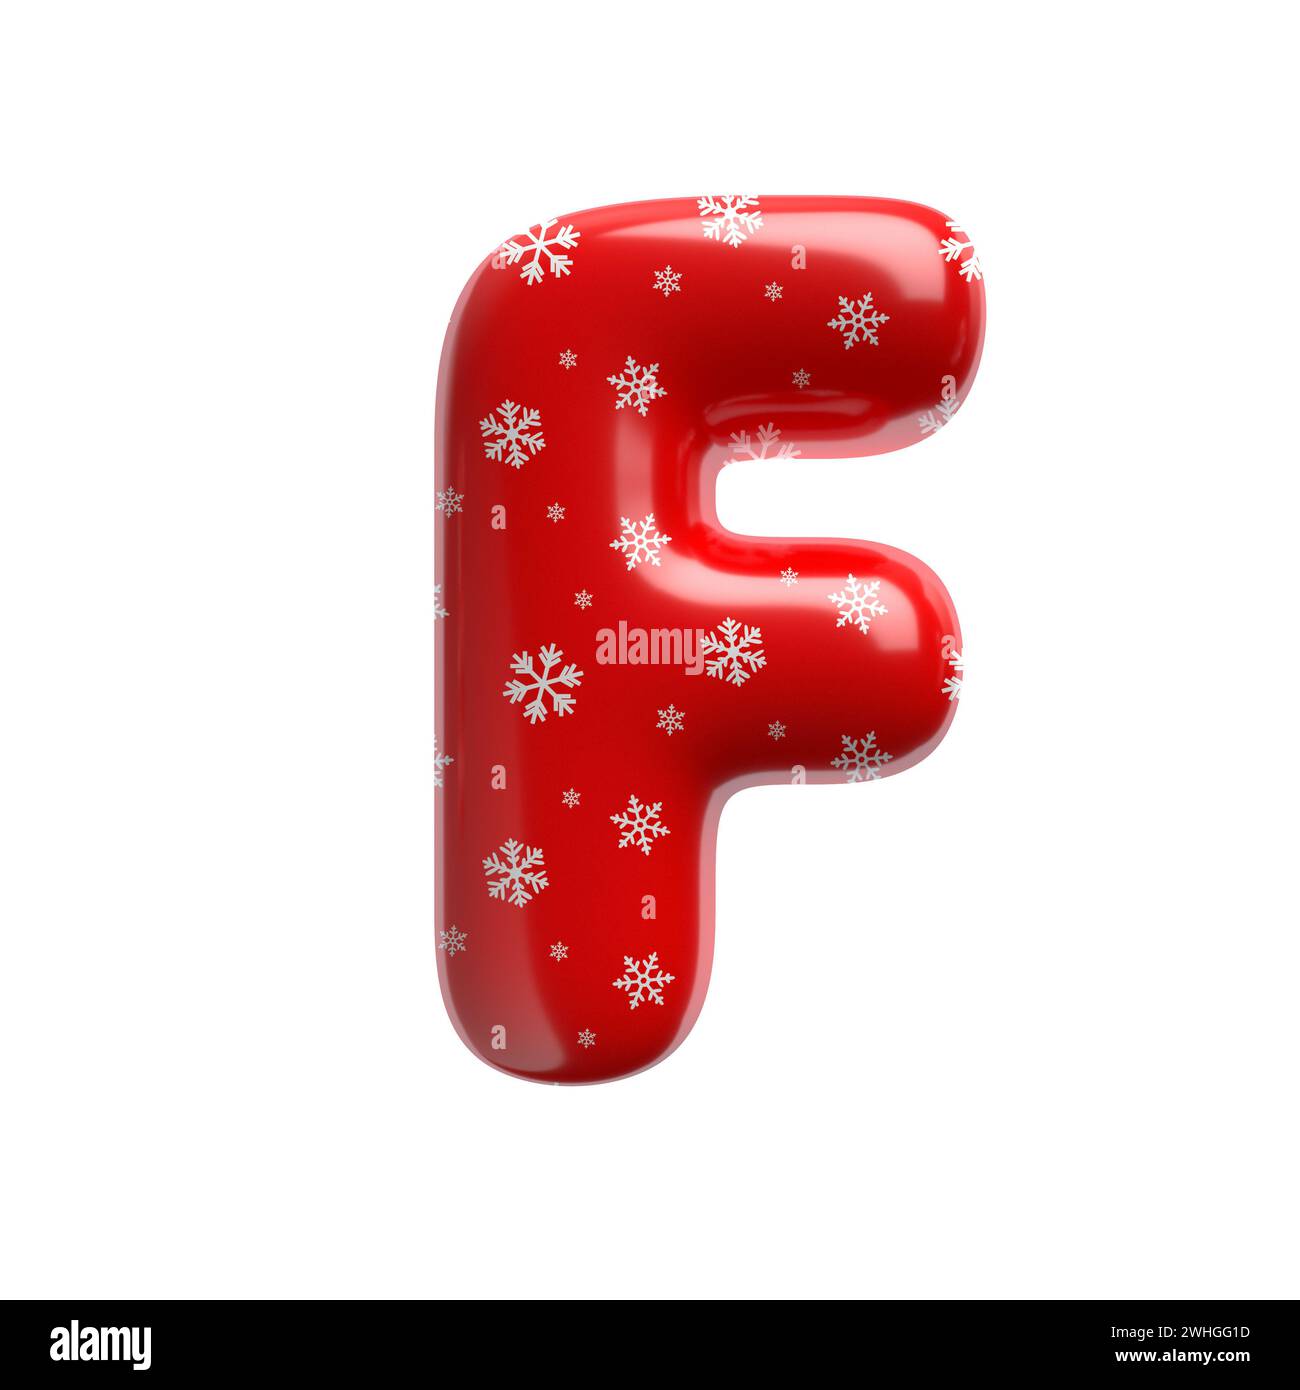 Lettera F del fiocco di neve - carattere natalizio 3d maiuscola - adatto per Natale, Babbo natale o argomenti correlati all'inverno Foto Stock